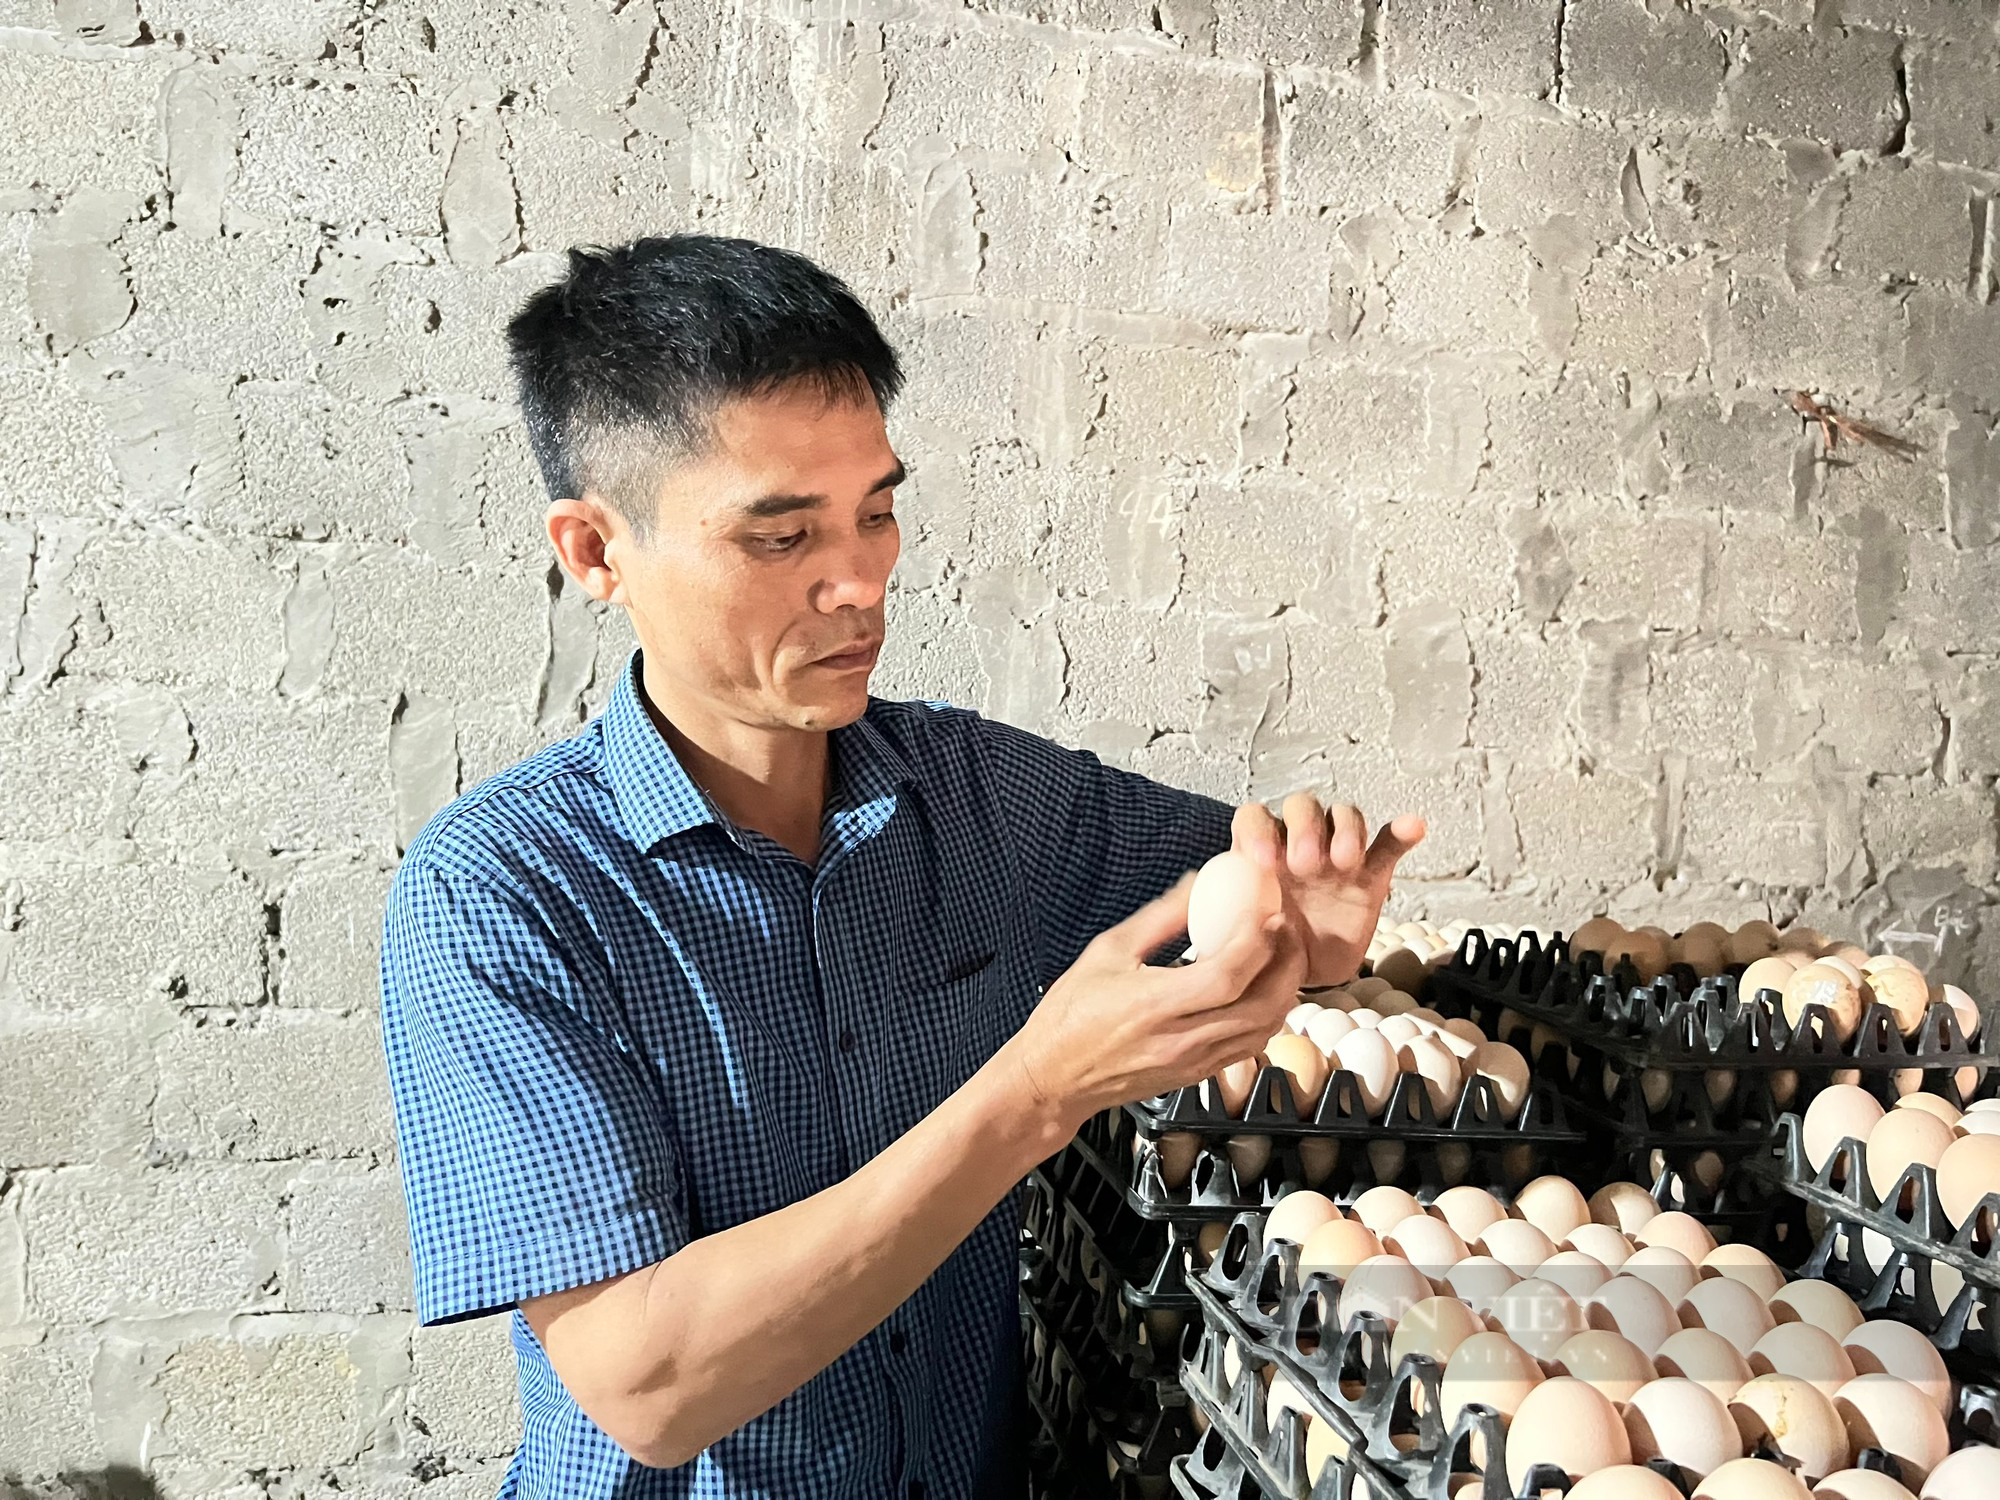 Từ 500 con gà đẻ, sau hơn 10 năm anh nông dân ở Thanh Hóa nhặt hơn 18.000 quả trứng/ngày - Ảnh 4.